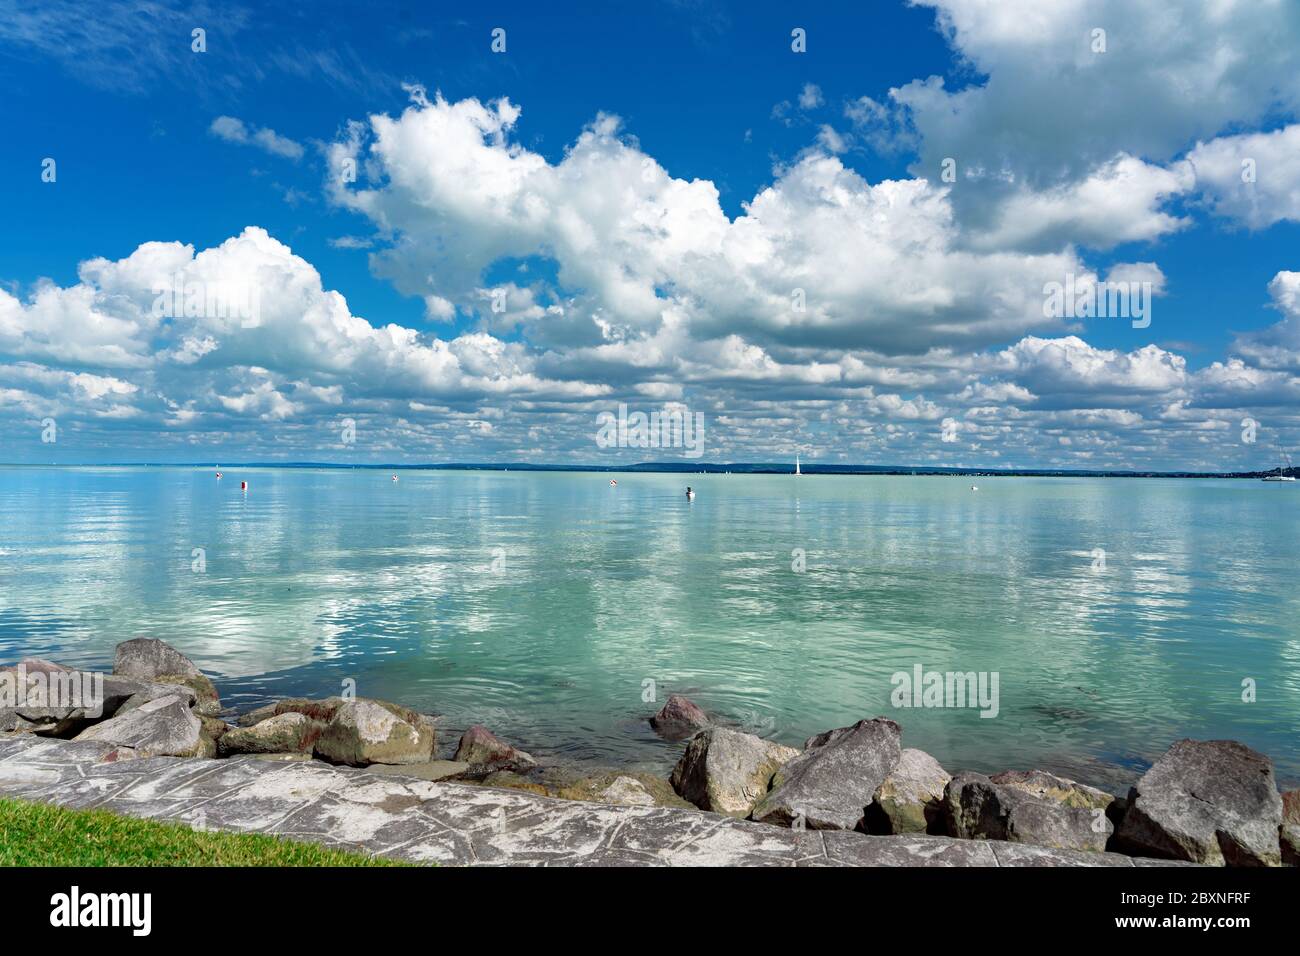 Einfaches Bild vom Plattensee in Ungarn vom Badecony Strand mit blauem Himmel und Wolkenrückbildung auf dem Wasser Stockfoto